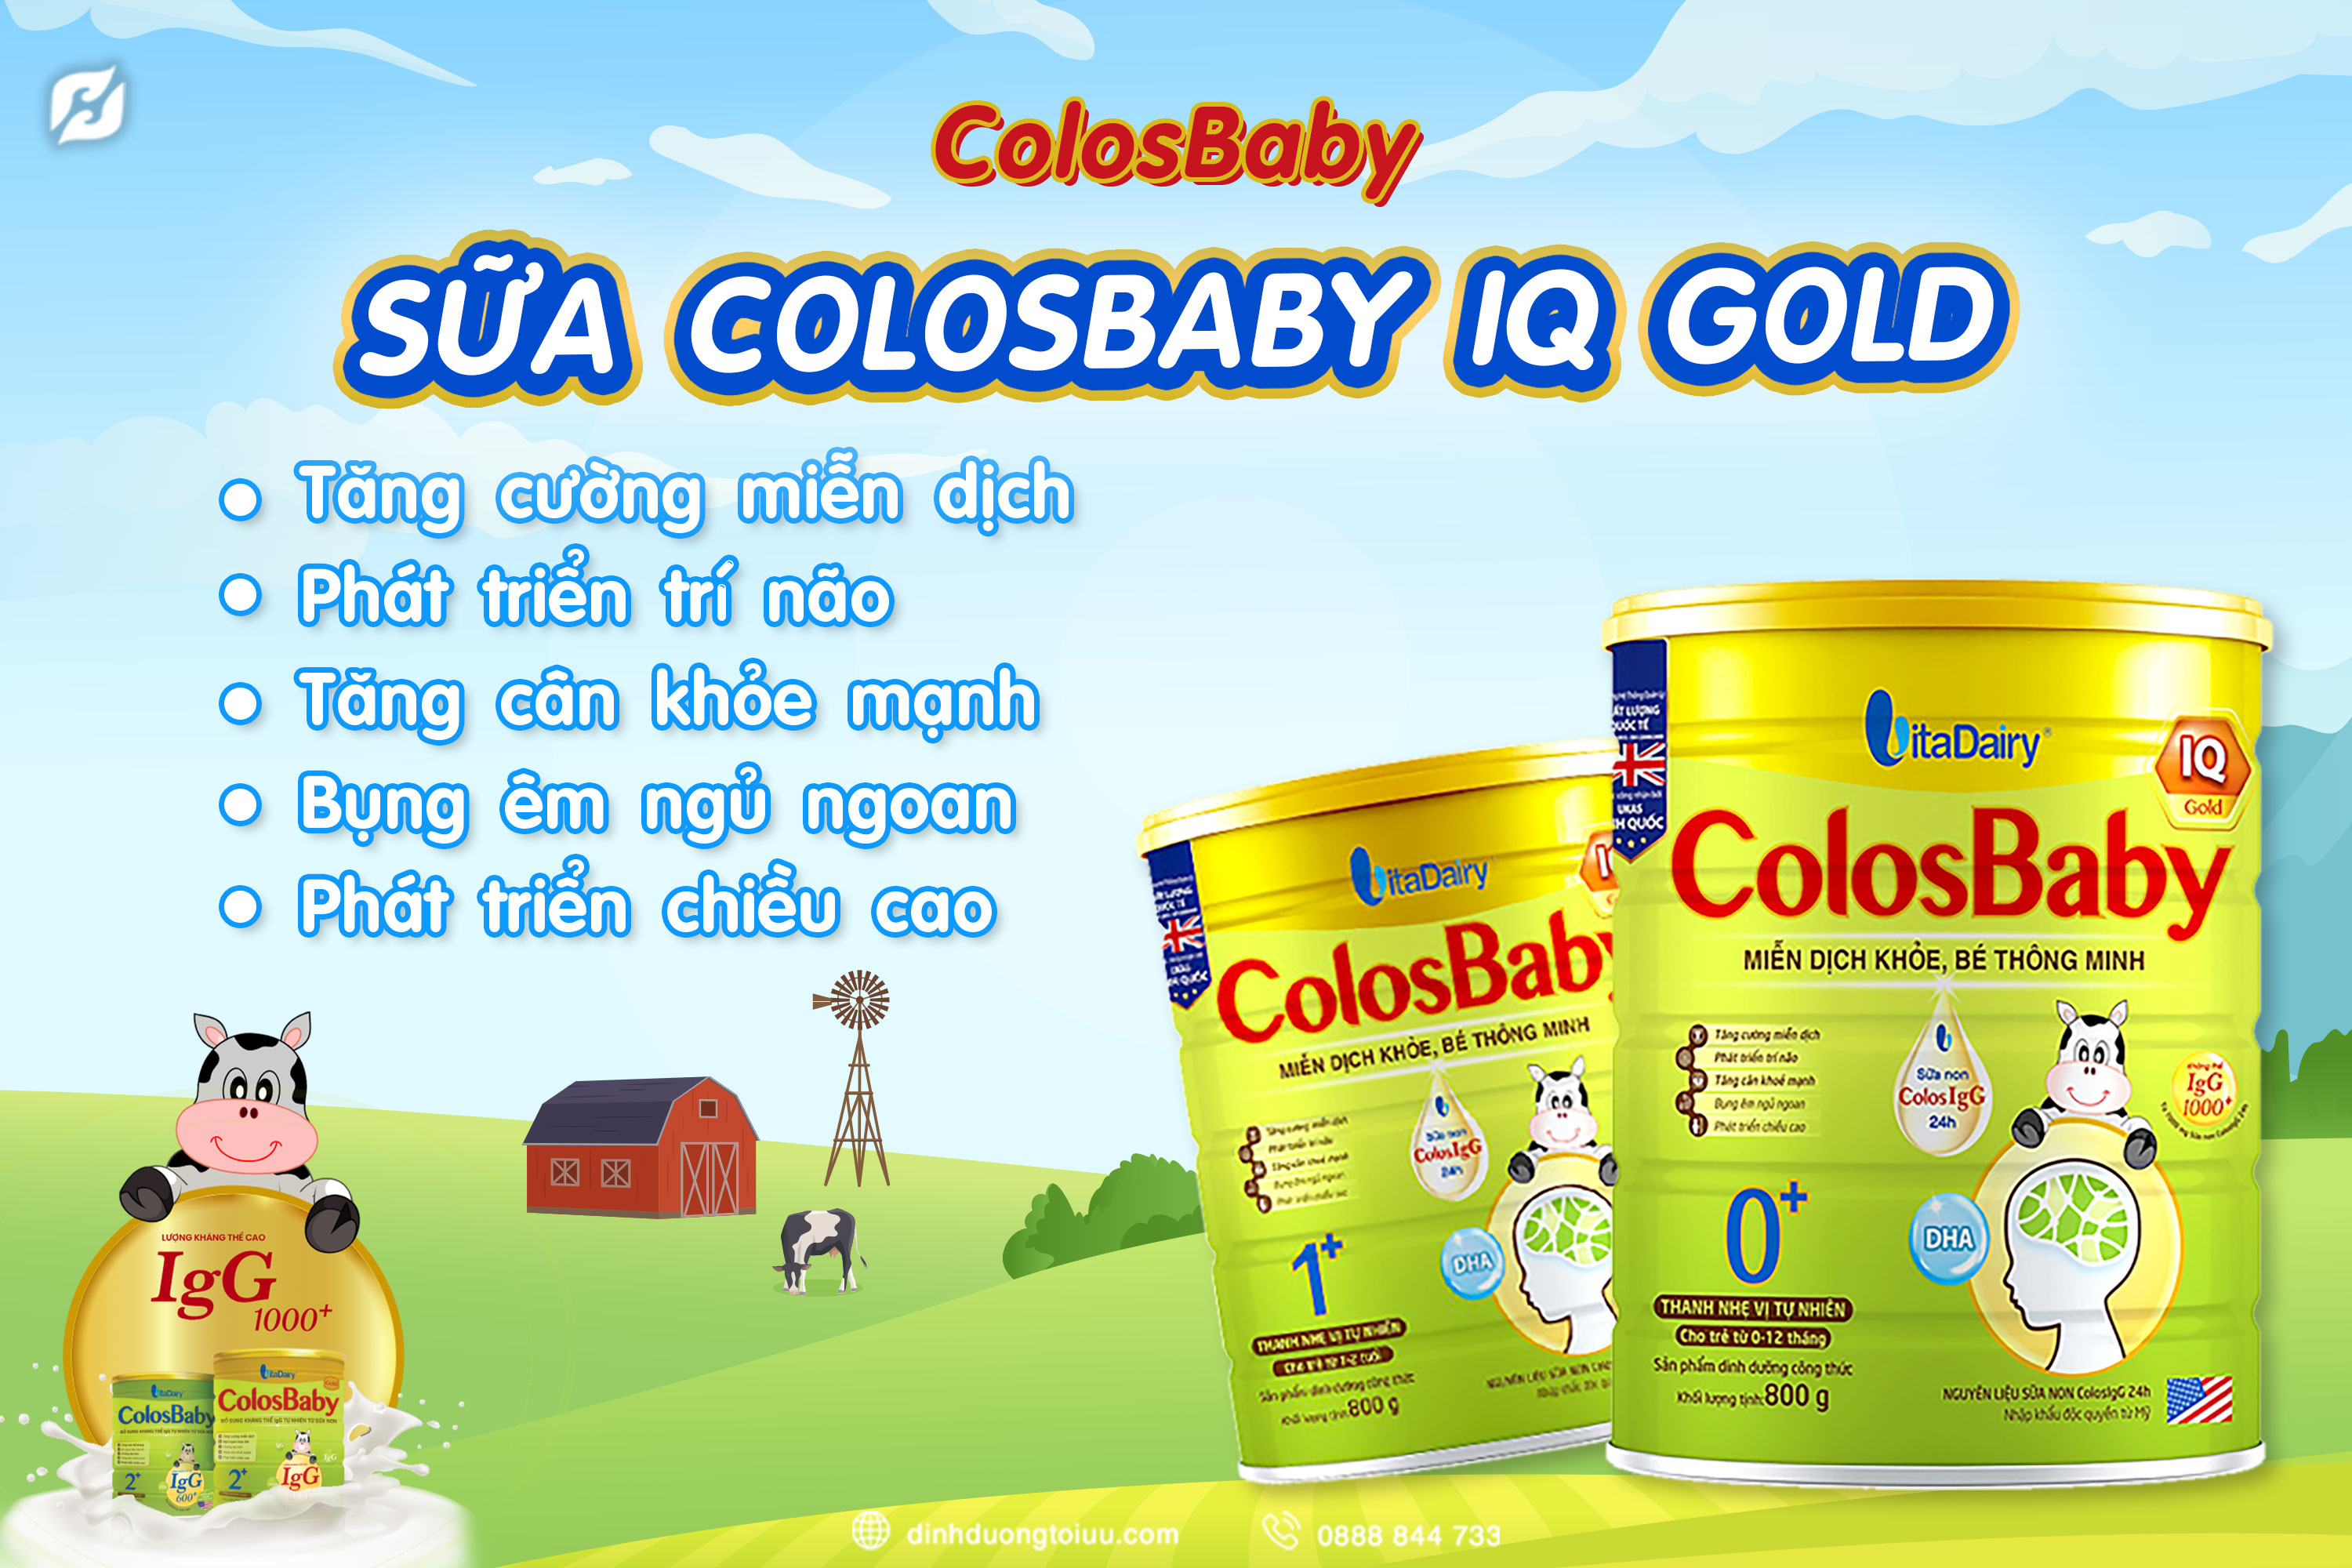 ColosBaby IQ Gold và công dụng nổi bật dành riêng cho trẻ đến từ công ty VitaDairy